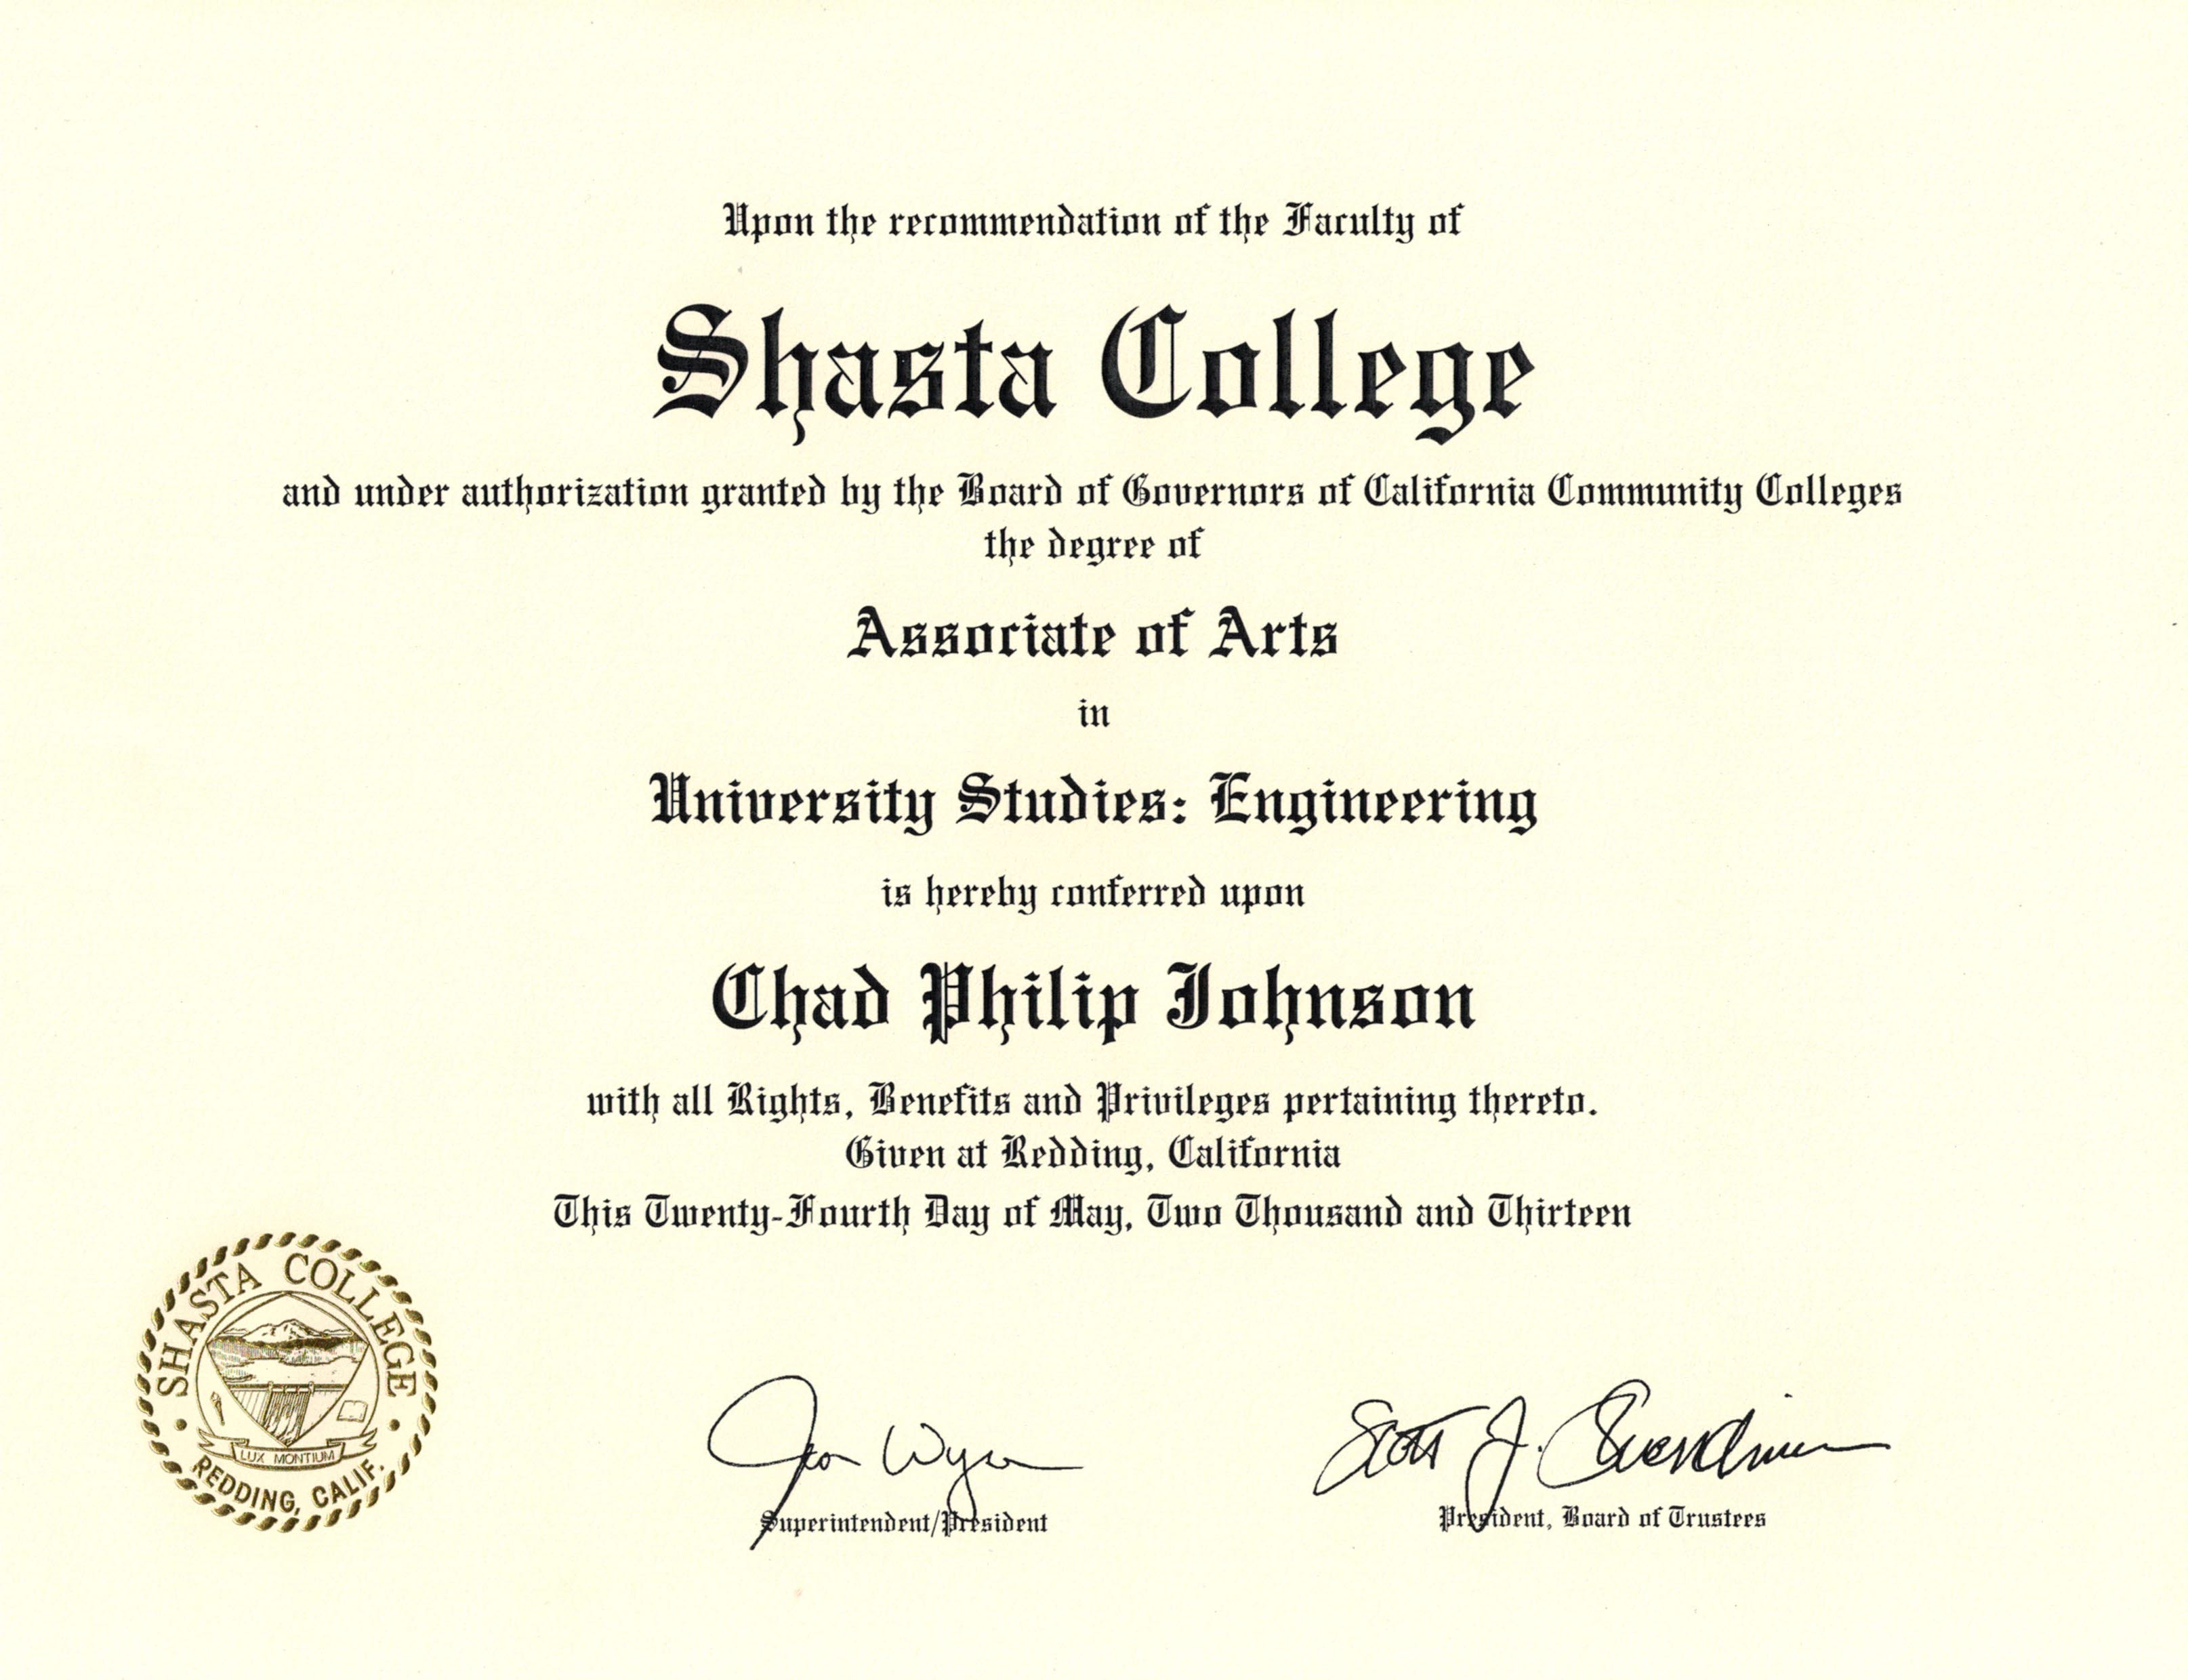 Associate Of Arts Degree In University Studies Engineering Chadspace